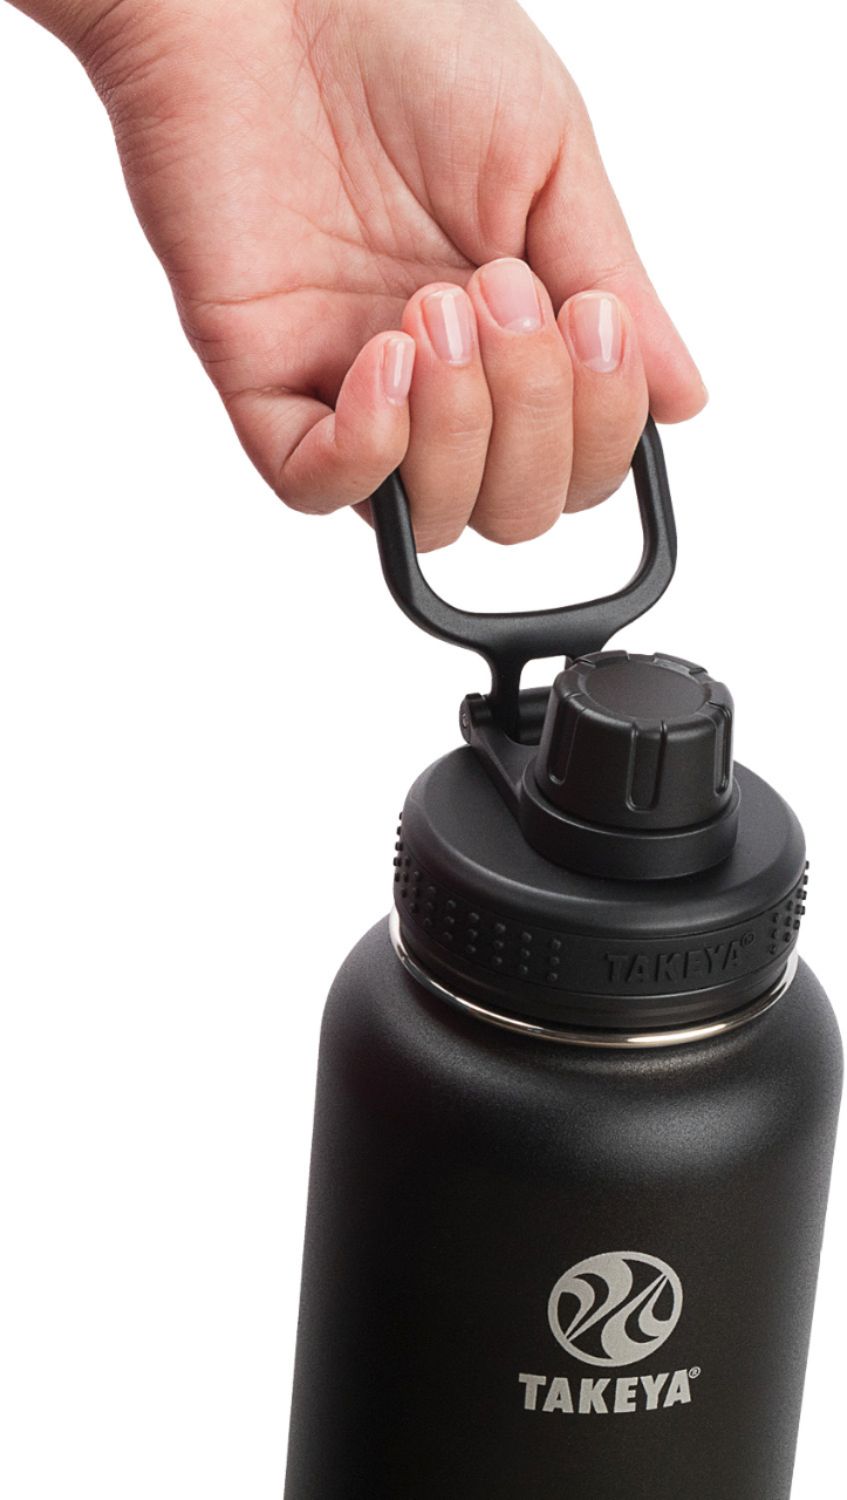 Takeya ThermoFlask 32-Oz. Bottle Black 50011 - Best Buy